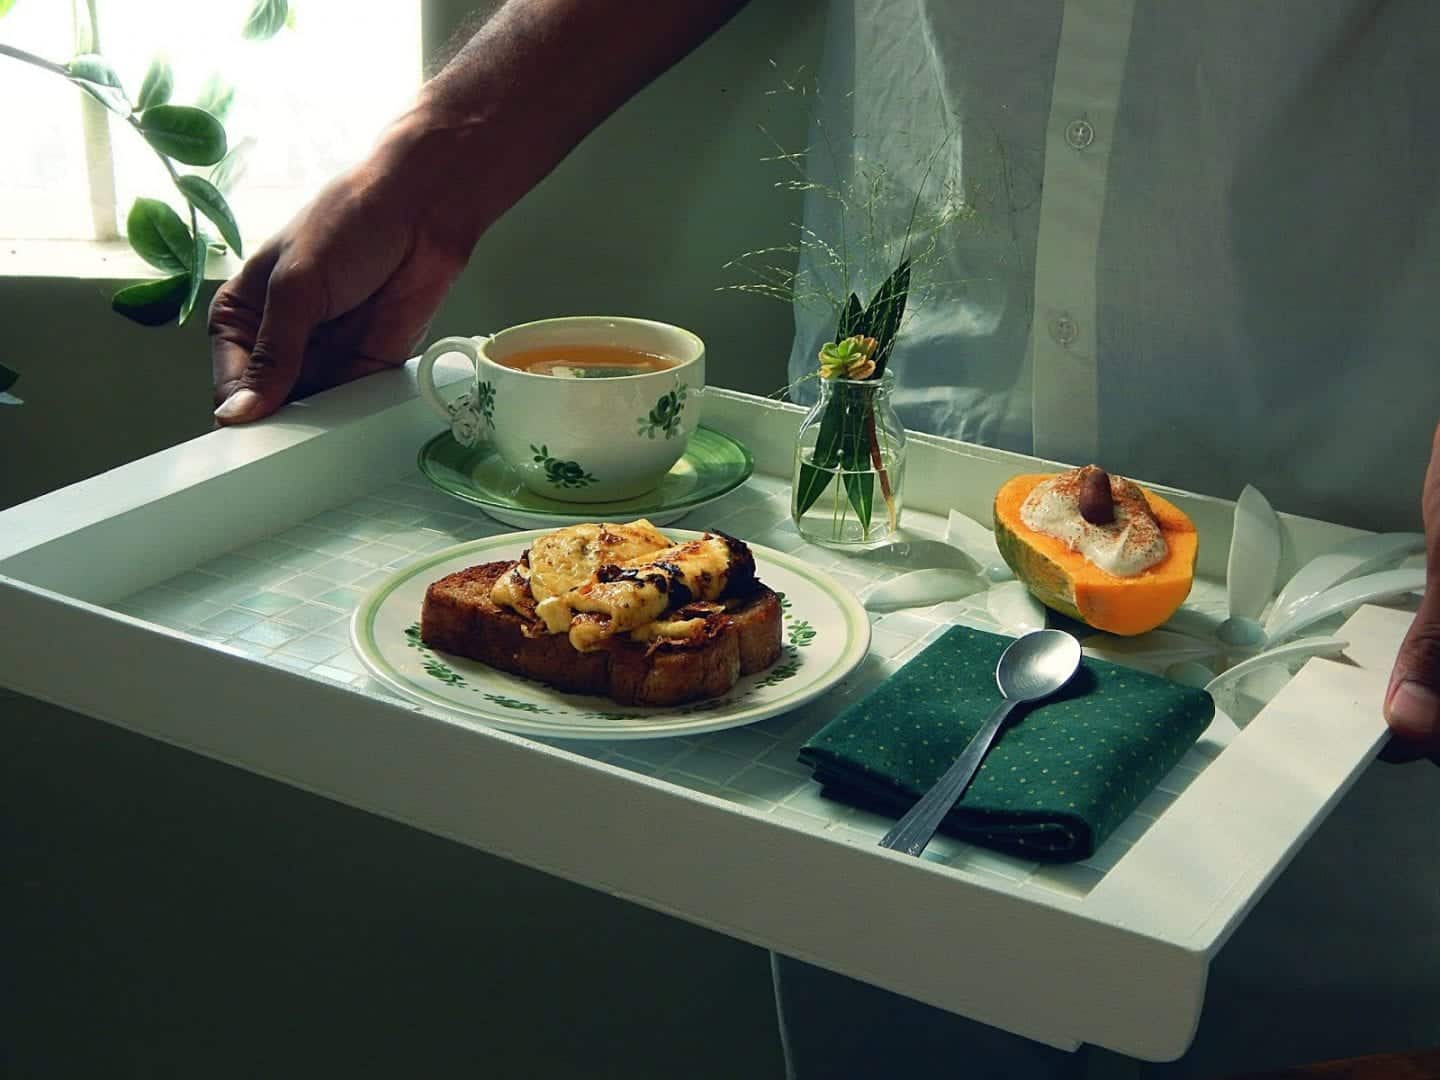 Café da manhã na cama- Dicas e ideias para você arrasar na surpresa